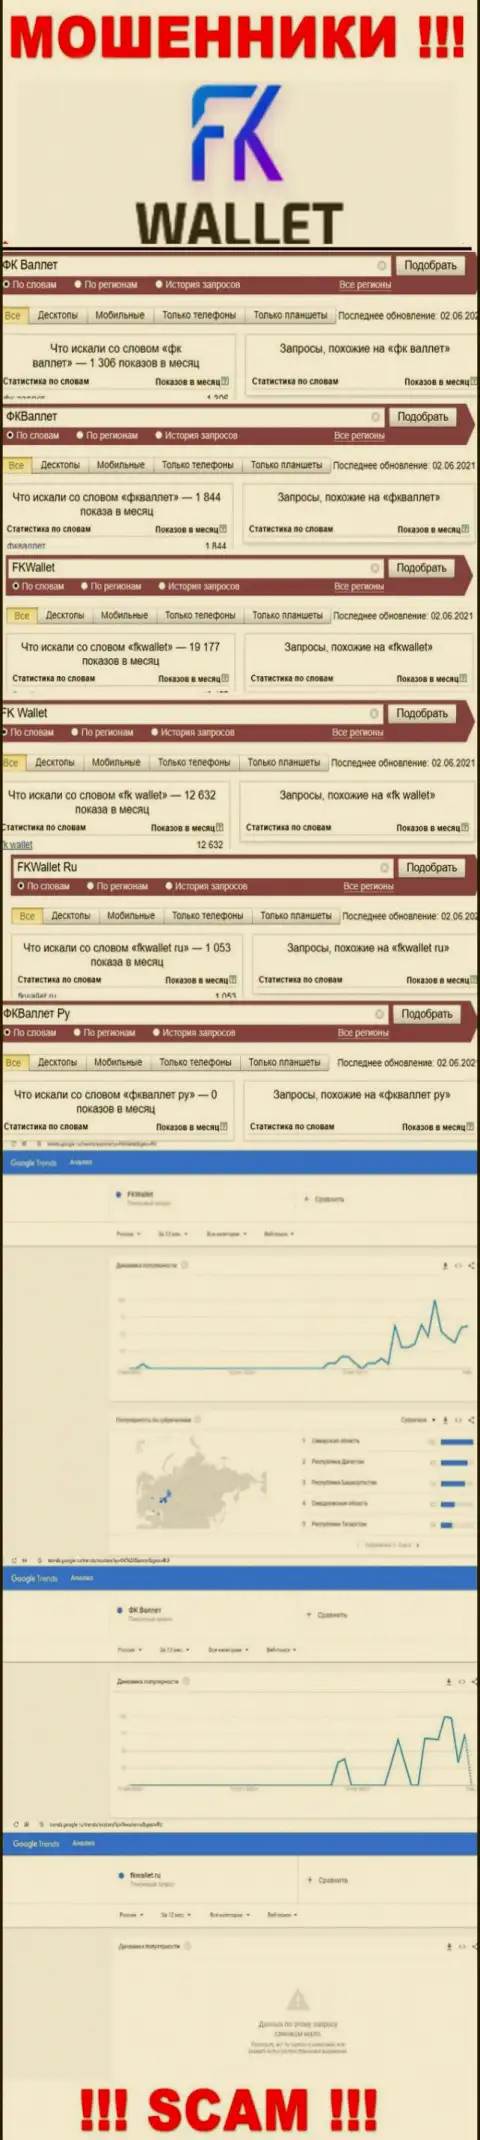 Скрин статистических сведений online запросов по преступно действующей организации FK Wallet